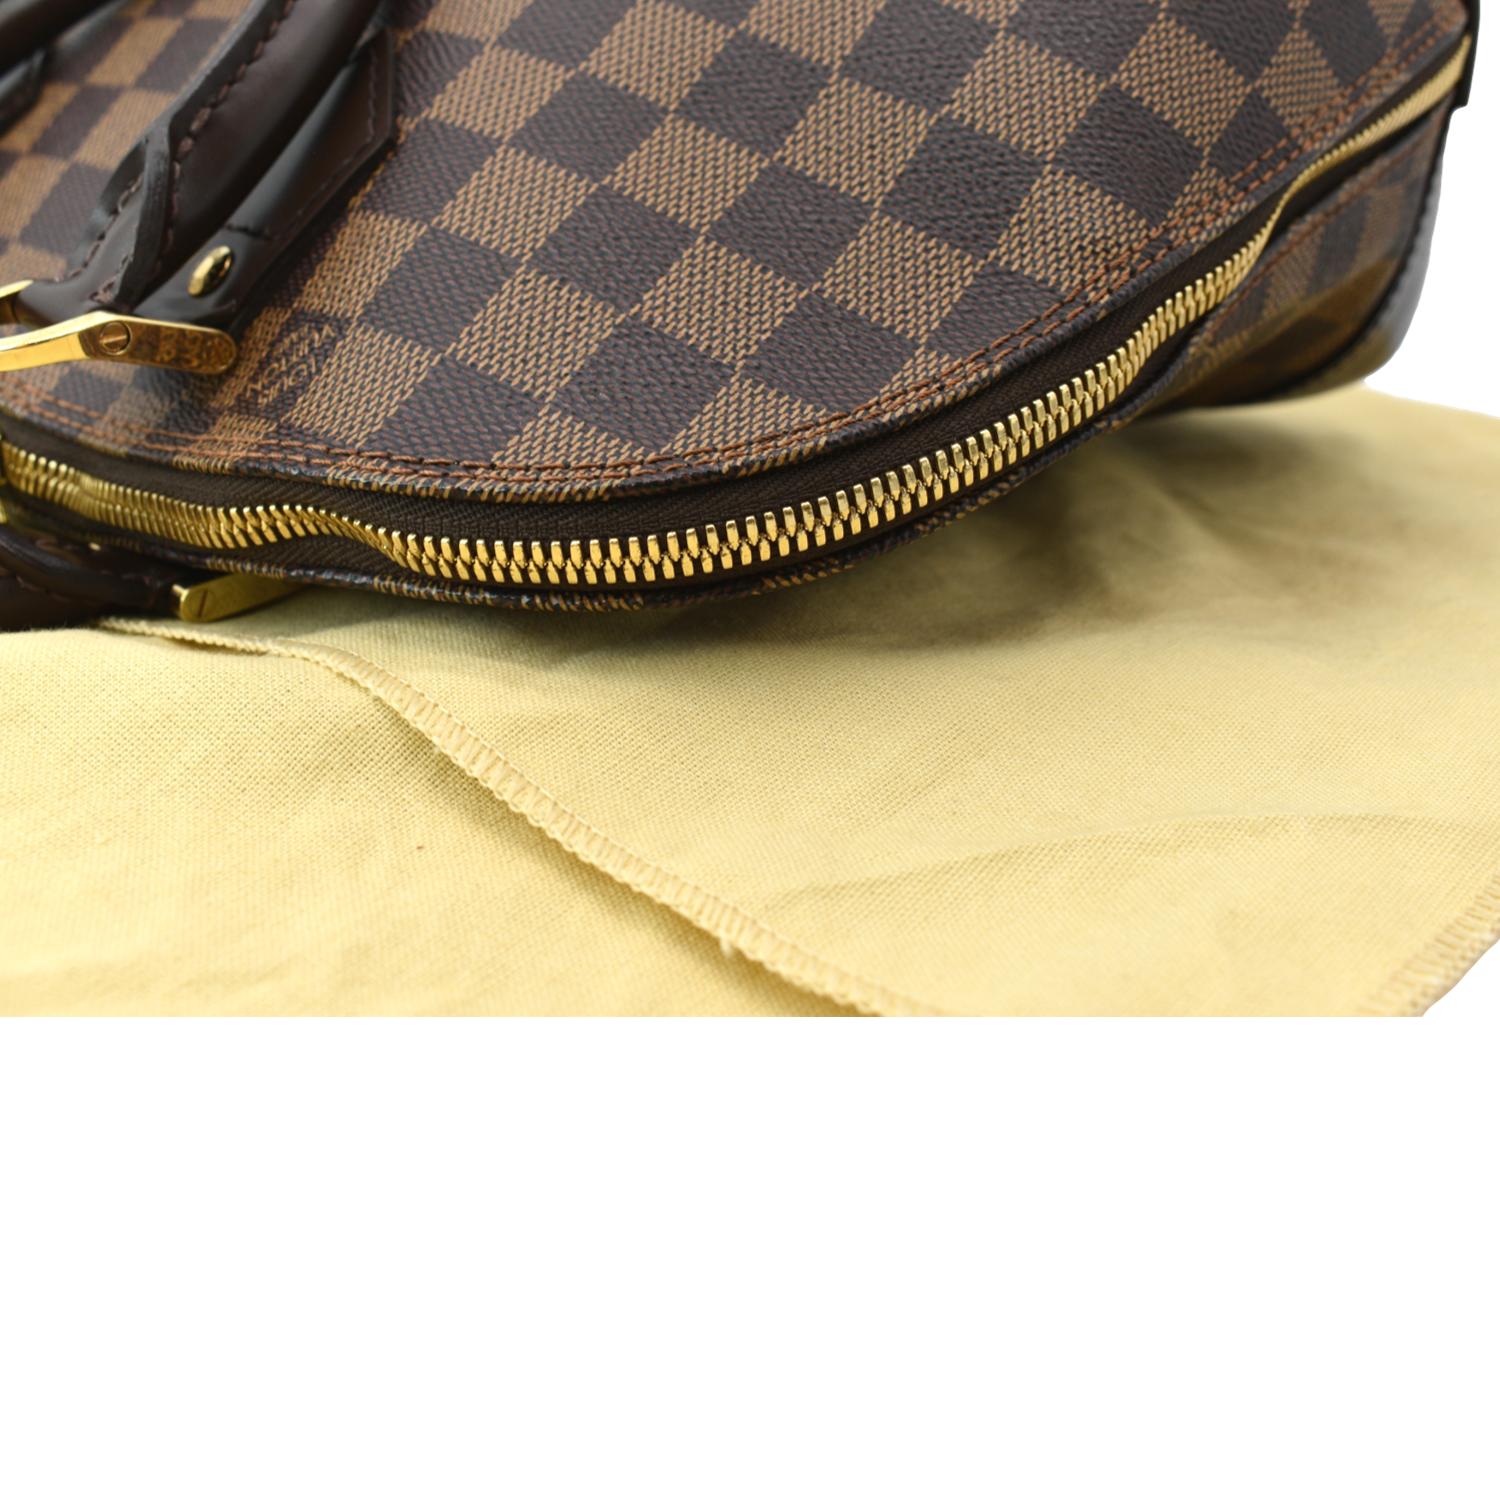 Louis Vuitton, Bags, Authentic Louis Vuitton Alma Pm